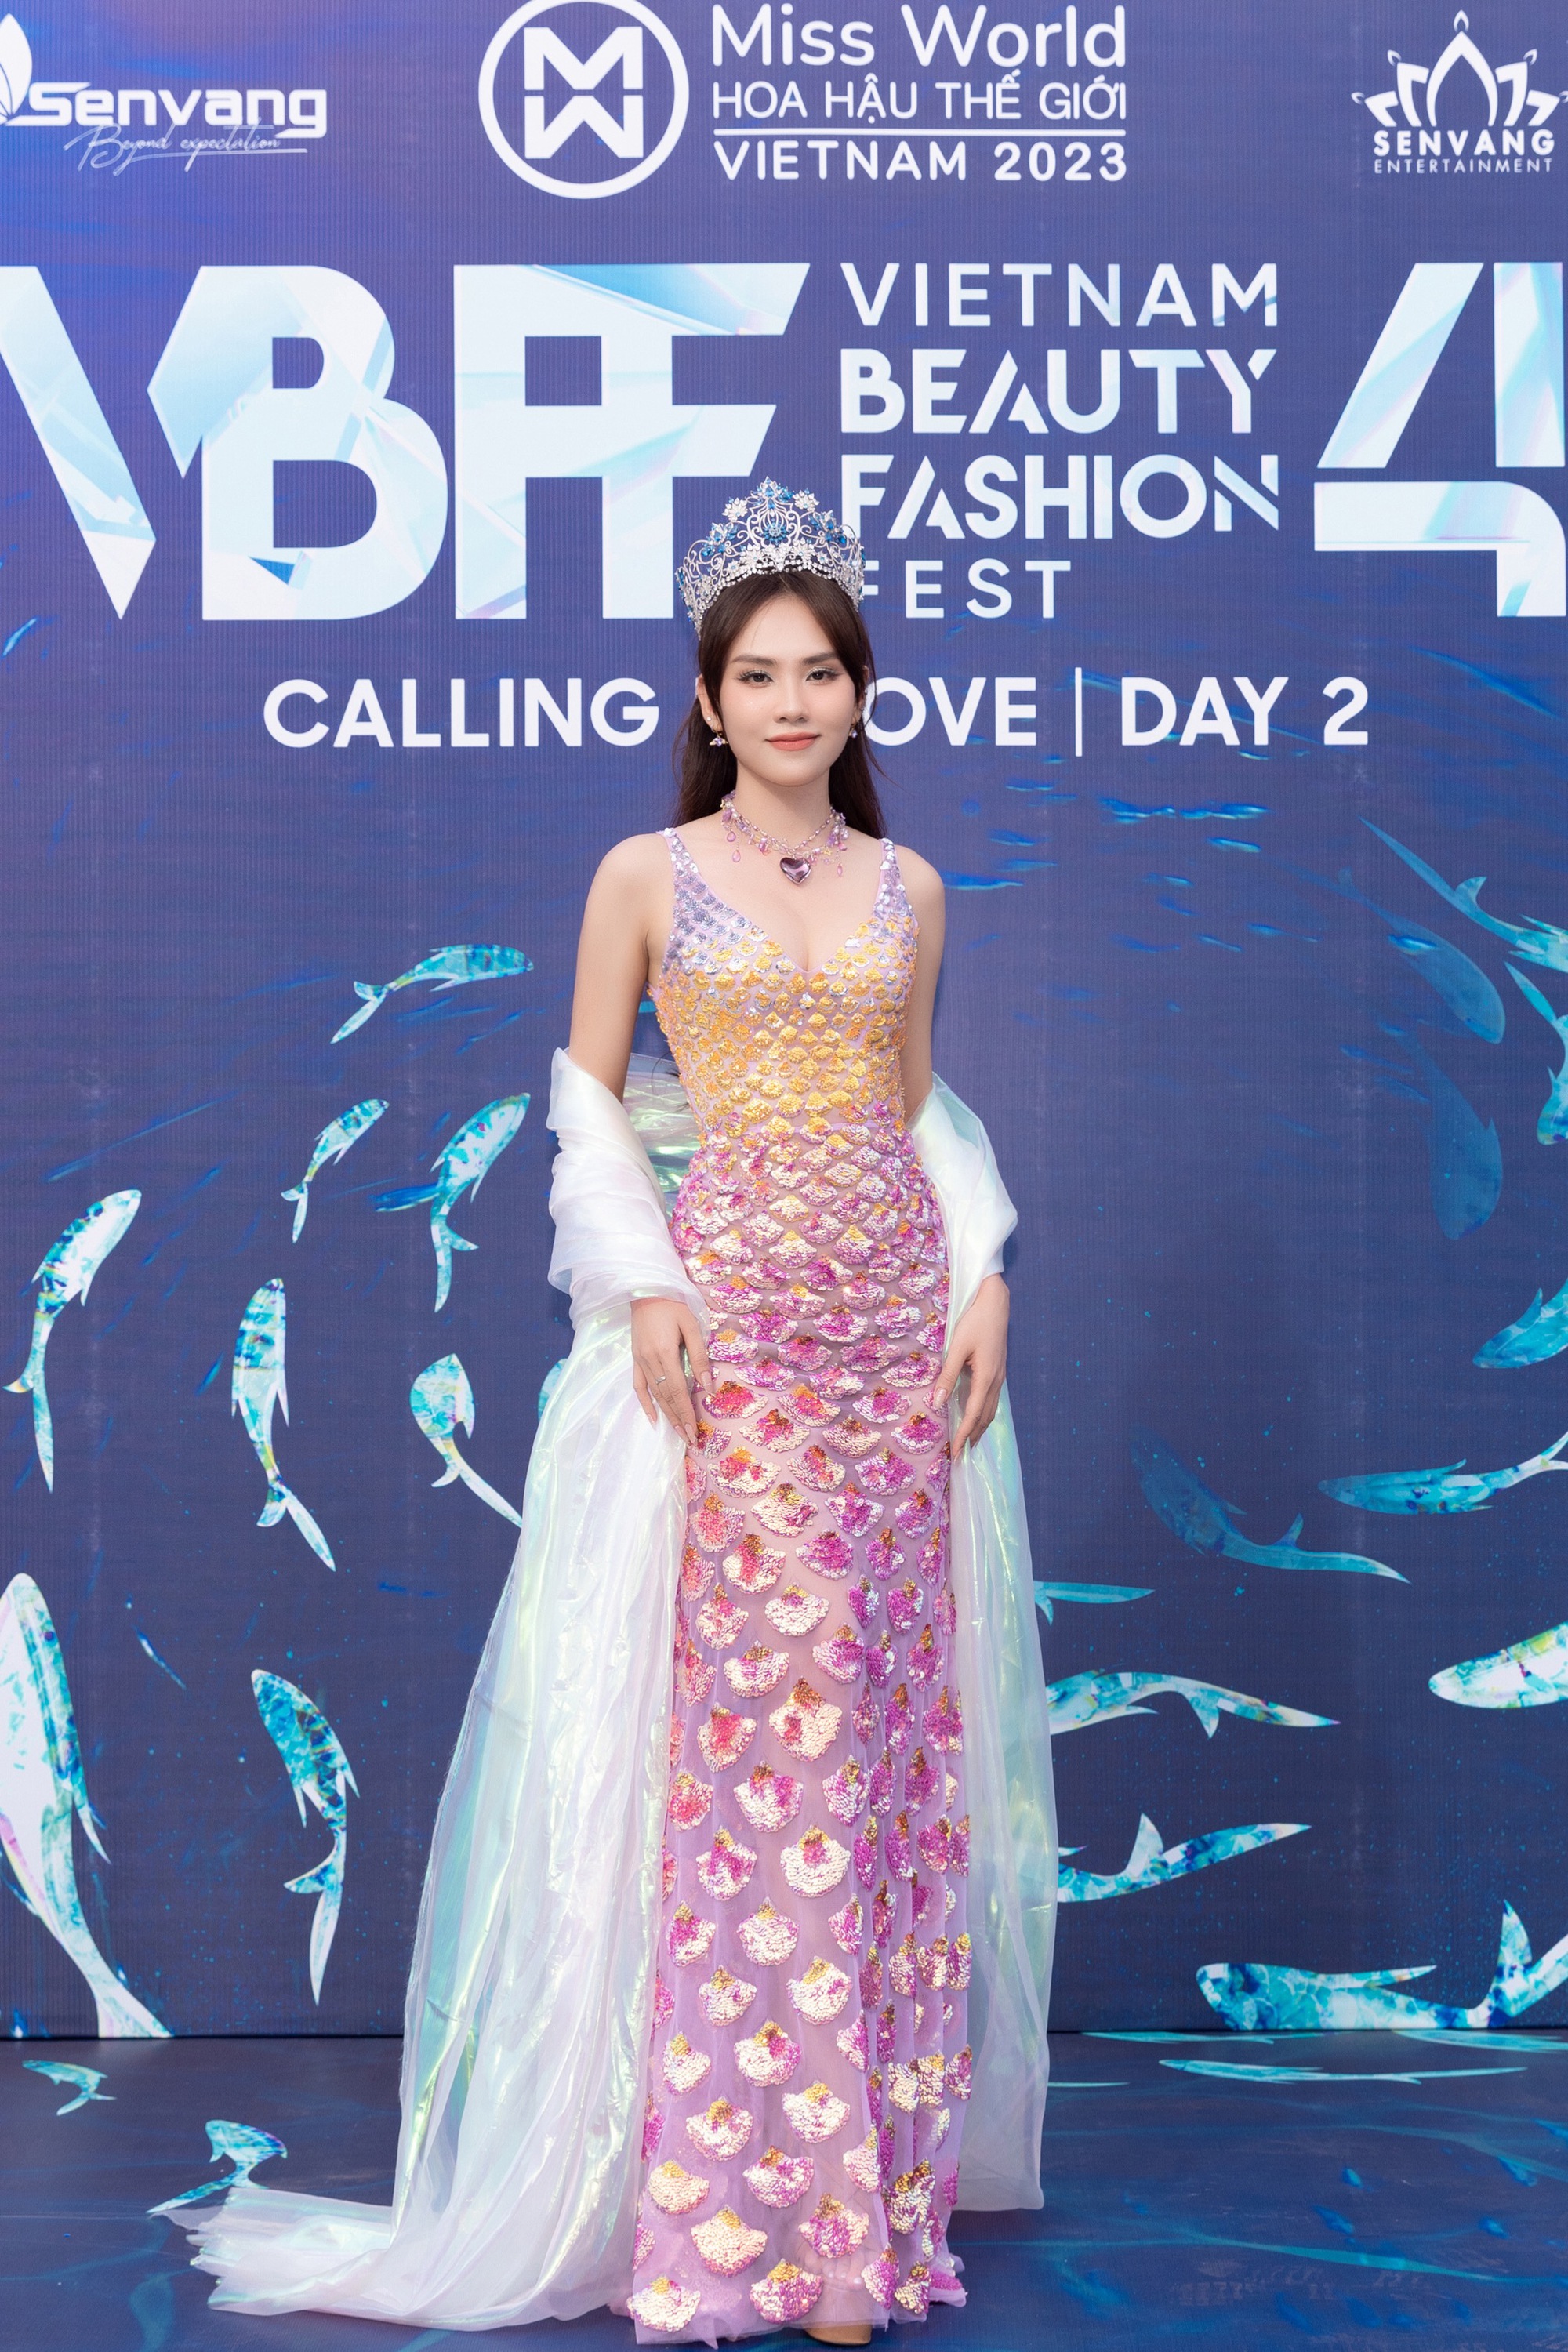 Đông đảo người đẹp khoe sắc trên thảm đỏ Vietnam Beauty Fashion Fest 4  - Ảnh 6.